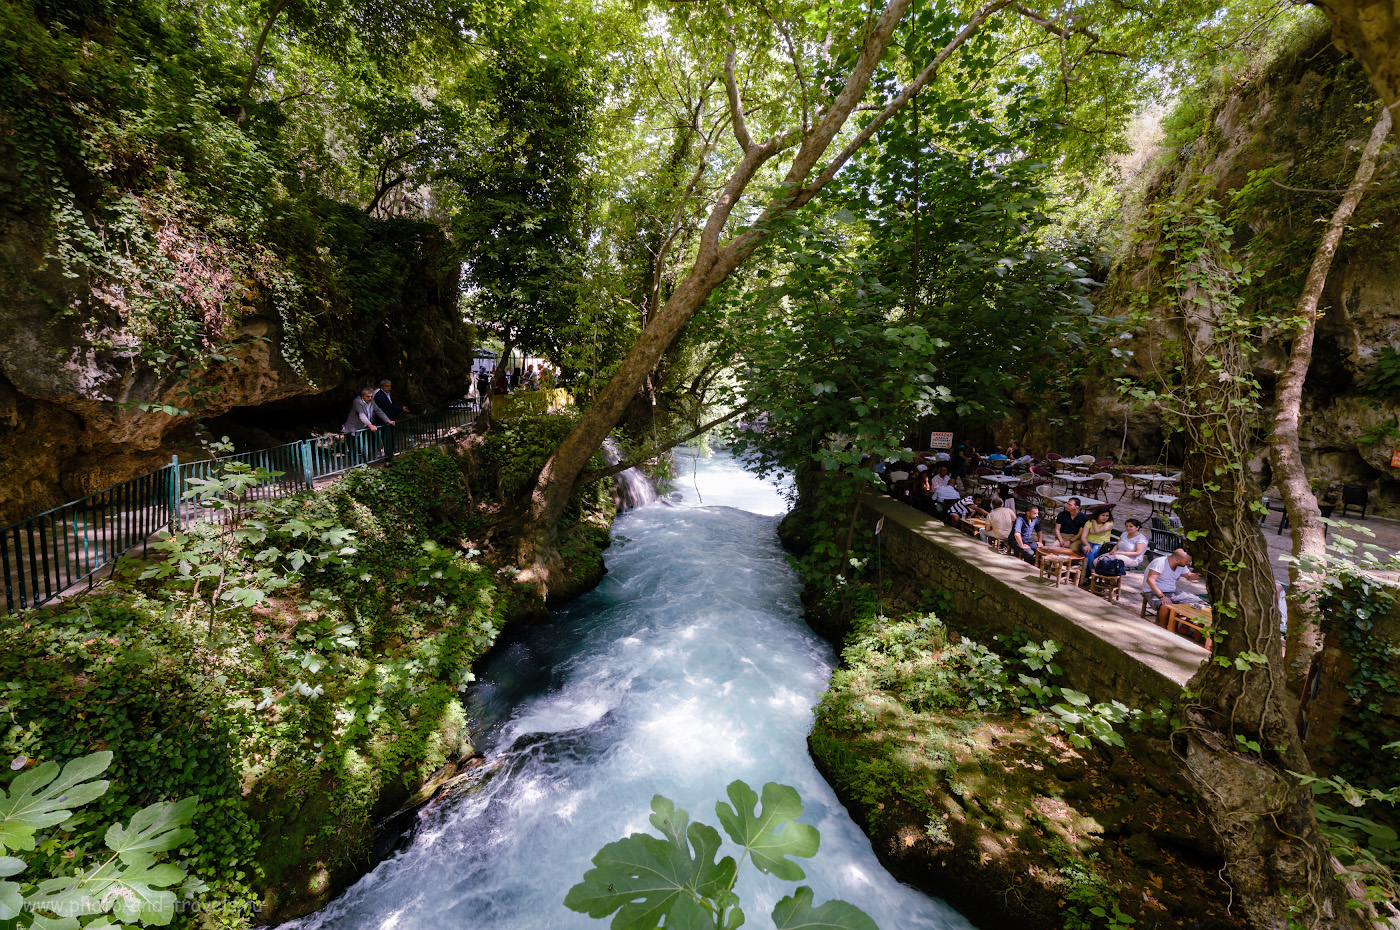 Фото 15. Река Дюден в парке Düden Şelalesi. Рассказы туристов об экскурсиях в Анталии. Интересные достопримечательности, что можно посмотреть во время отдыха в Турции. 1/50, 8.0, 250, -0.33, 14. 